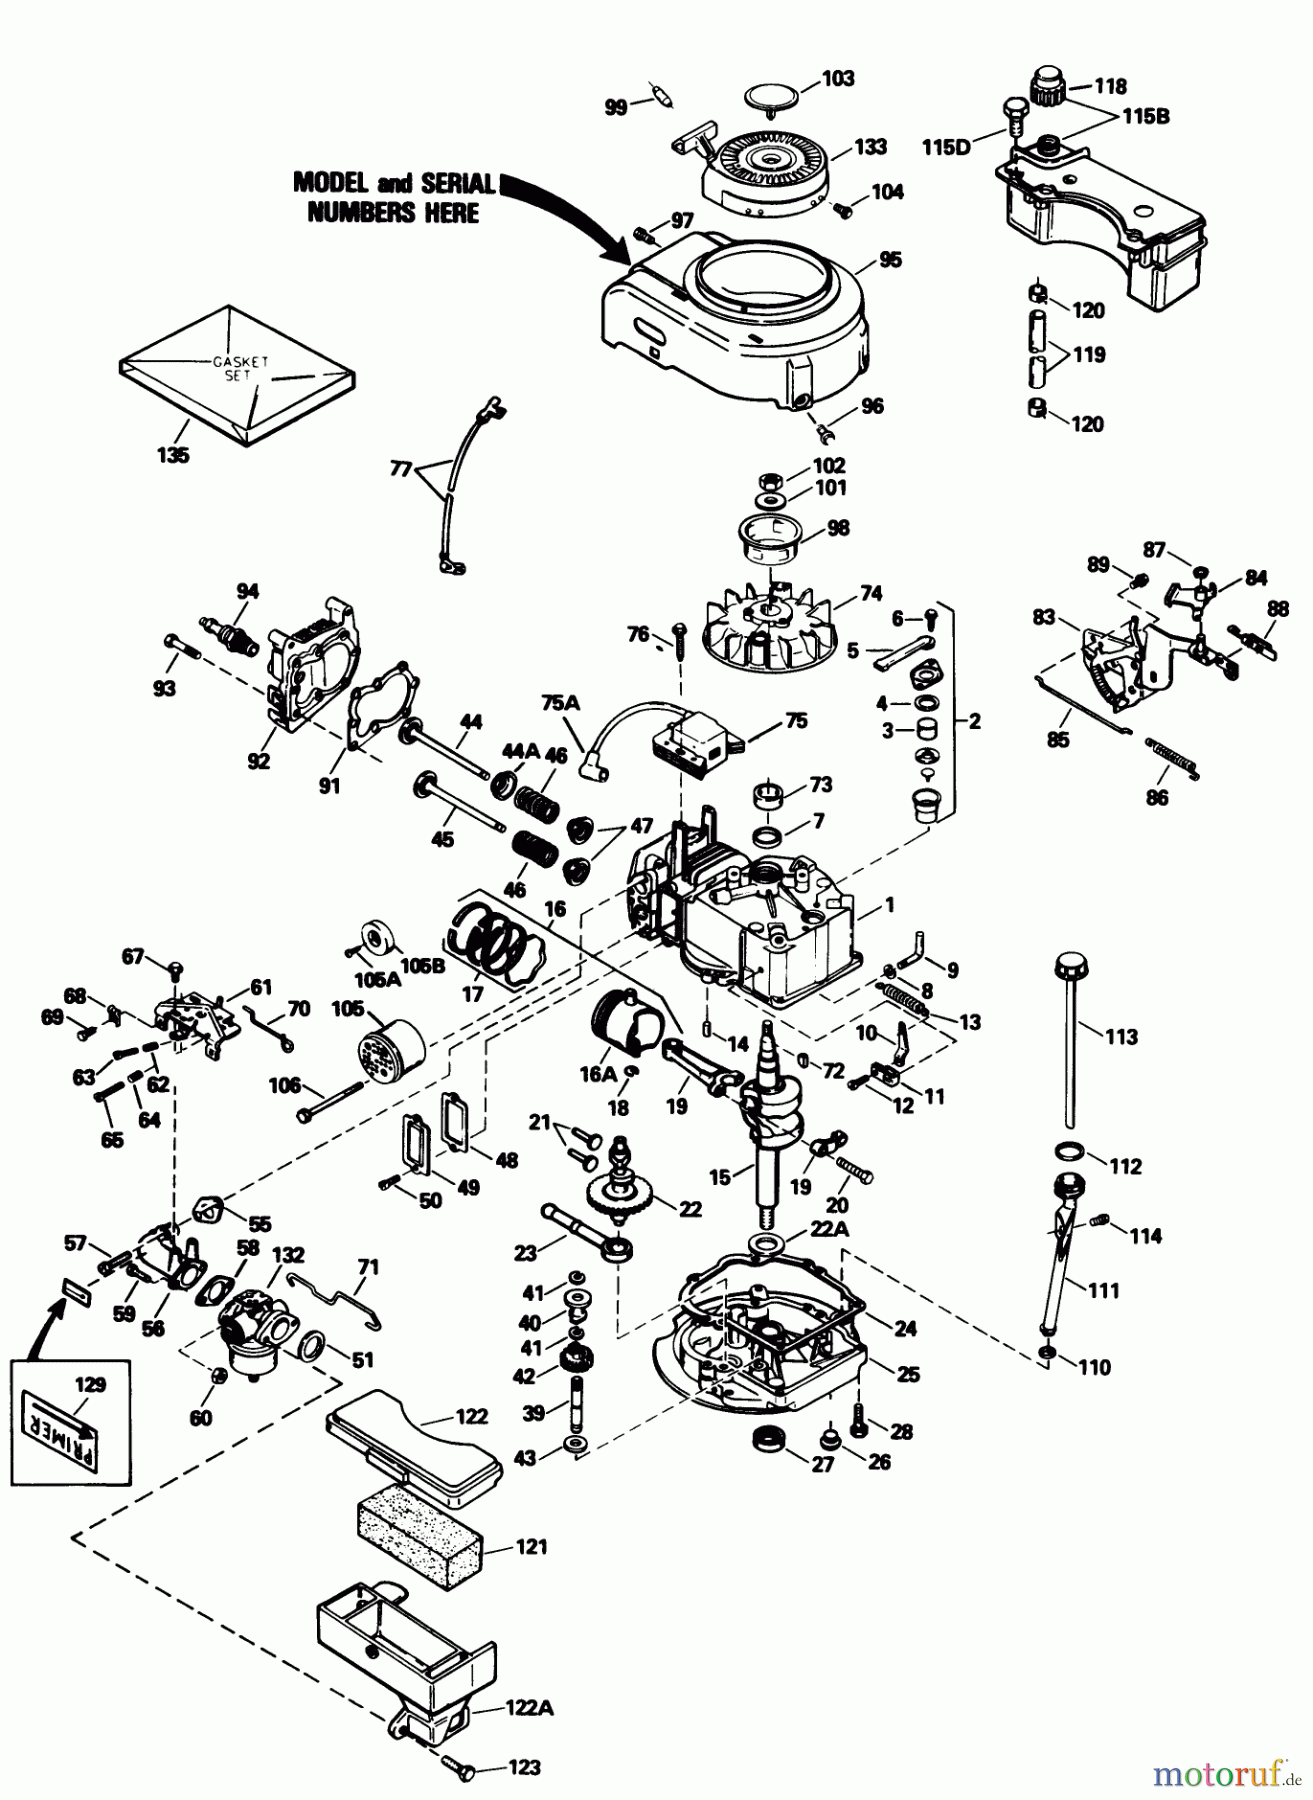  Toro Neu Mowers, Walk-Behind Seite 1 20588C - Toro Lawnmower, 1989 (9000001-9999999) ENGINE TECUMSEH MODEL NO. TVS100-44020B